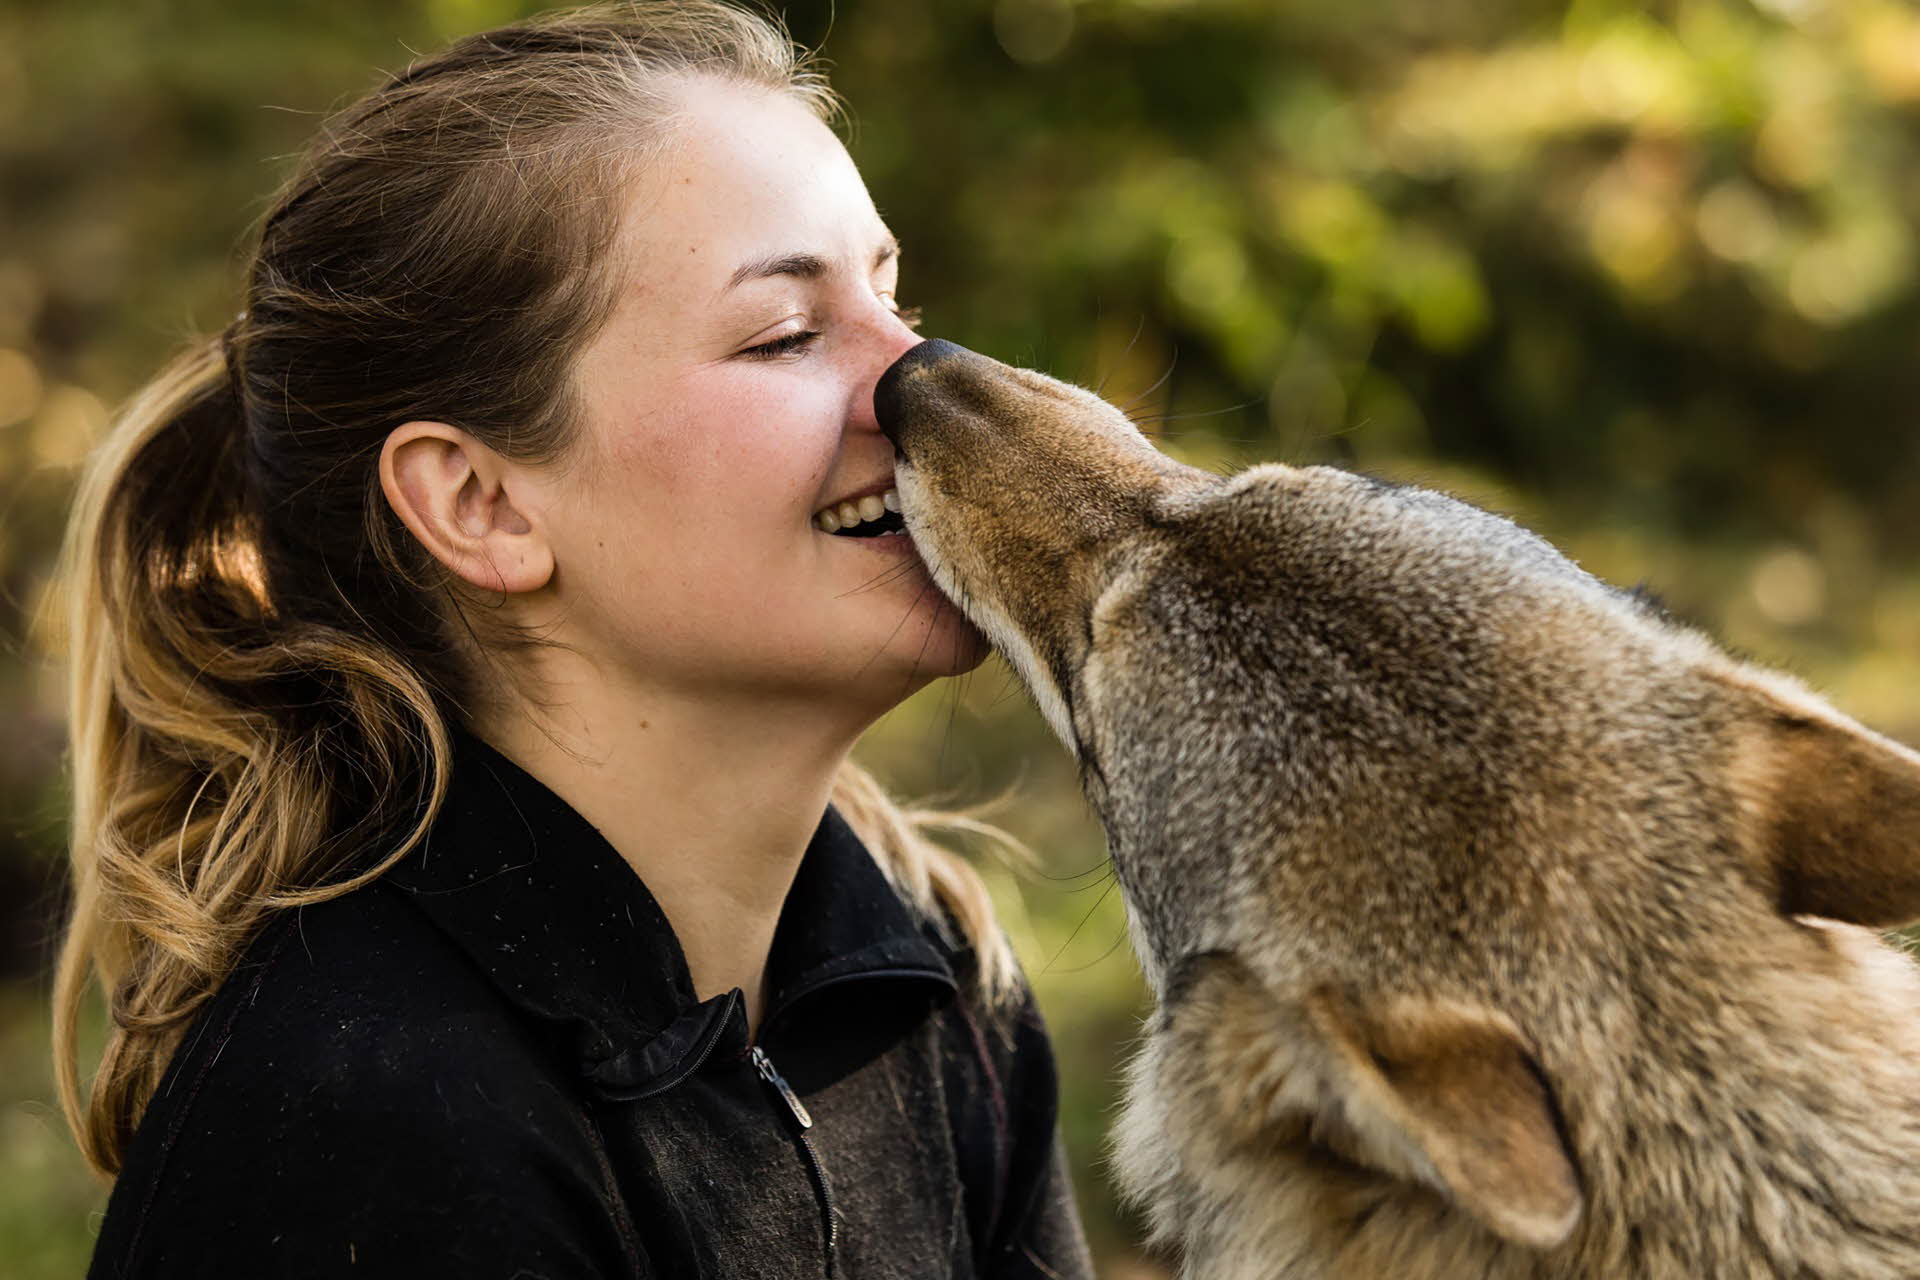 オオカミにキスされて微笑むポニーテールの女性。 